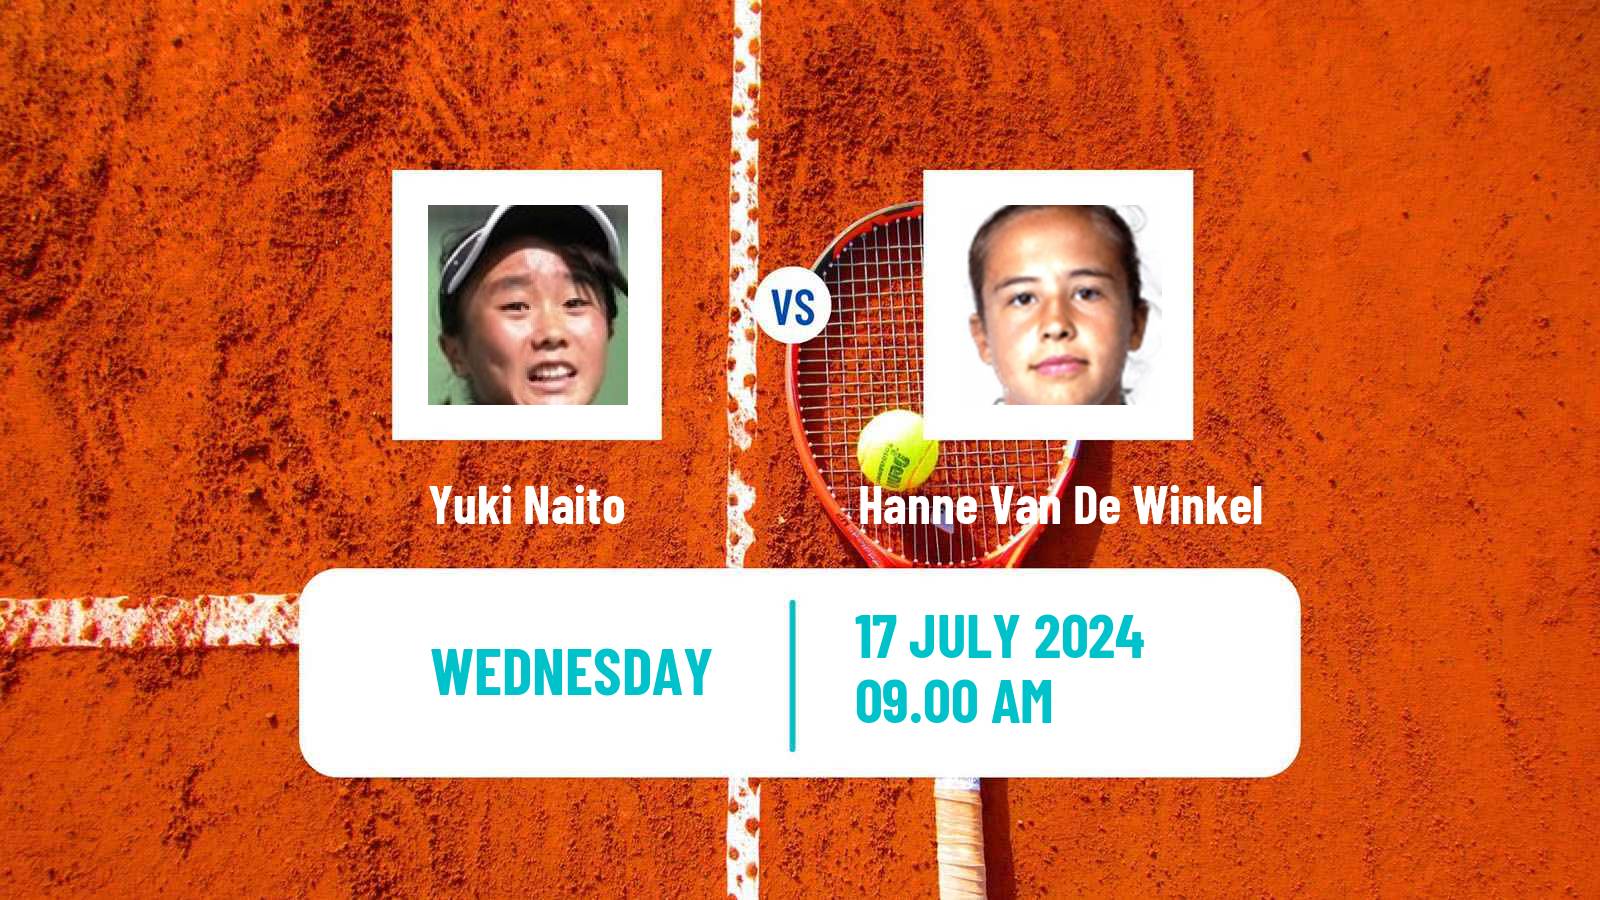 Tennis ITF W35 Darmstadt Women Yuki Naito - Hanne Van De Winkel